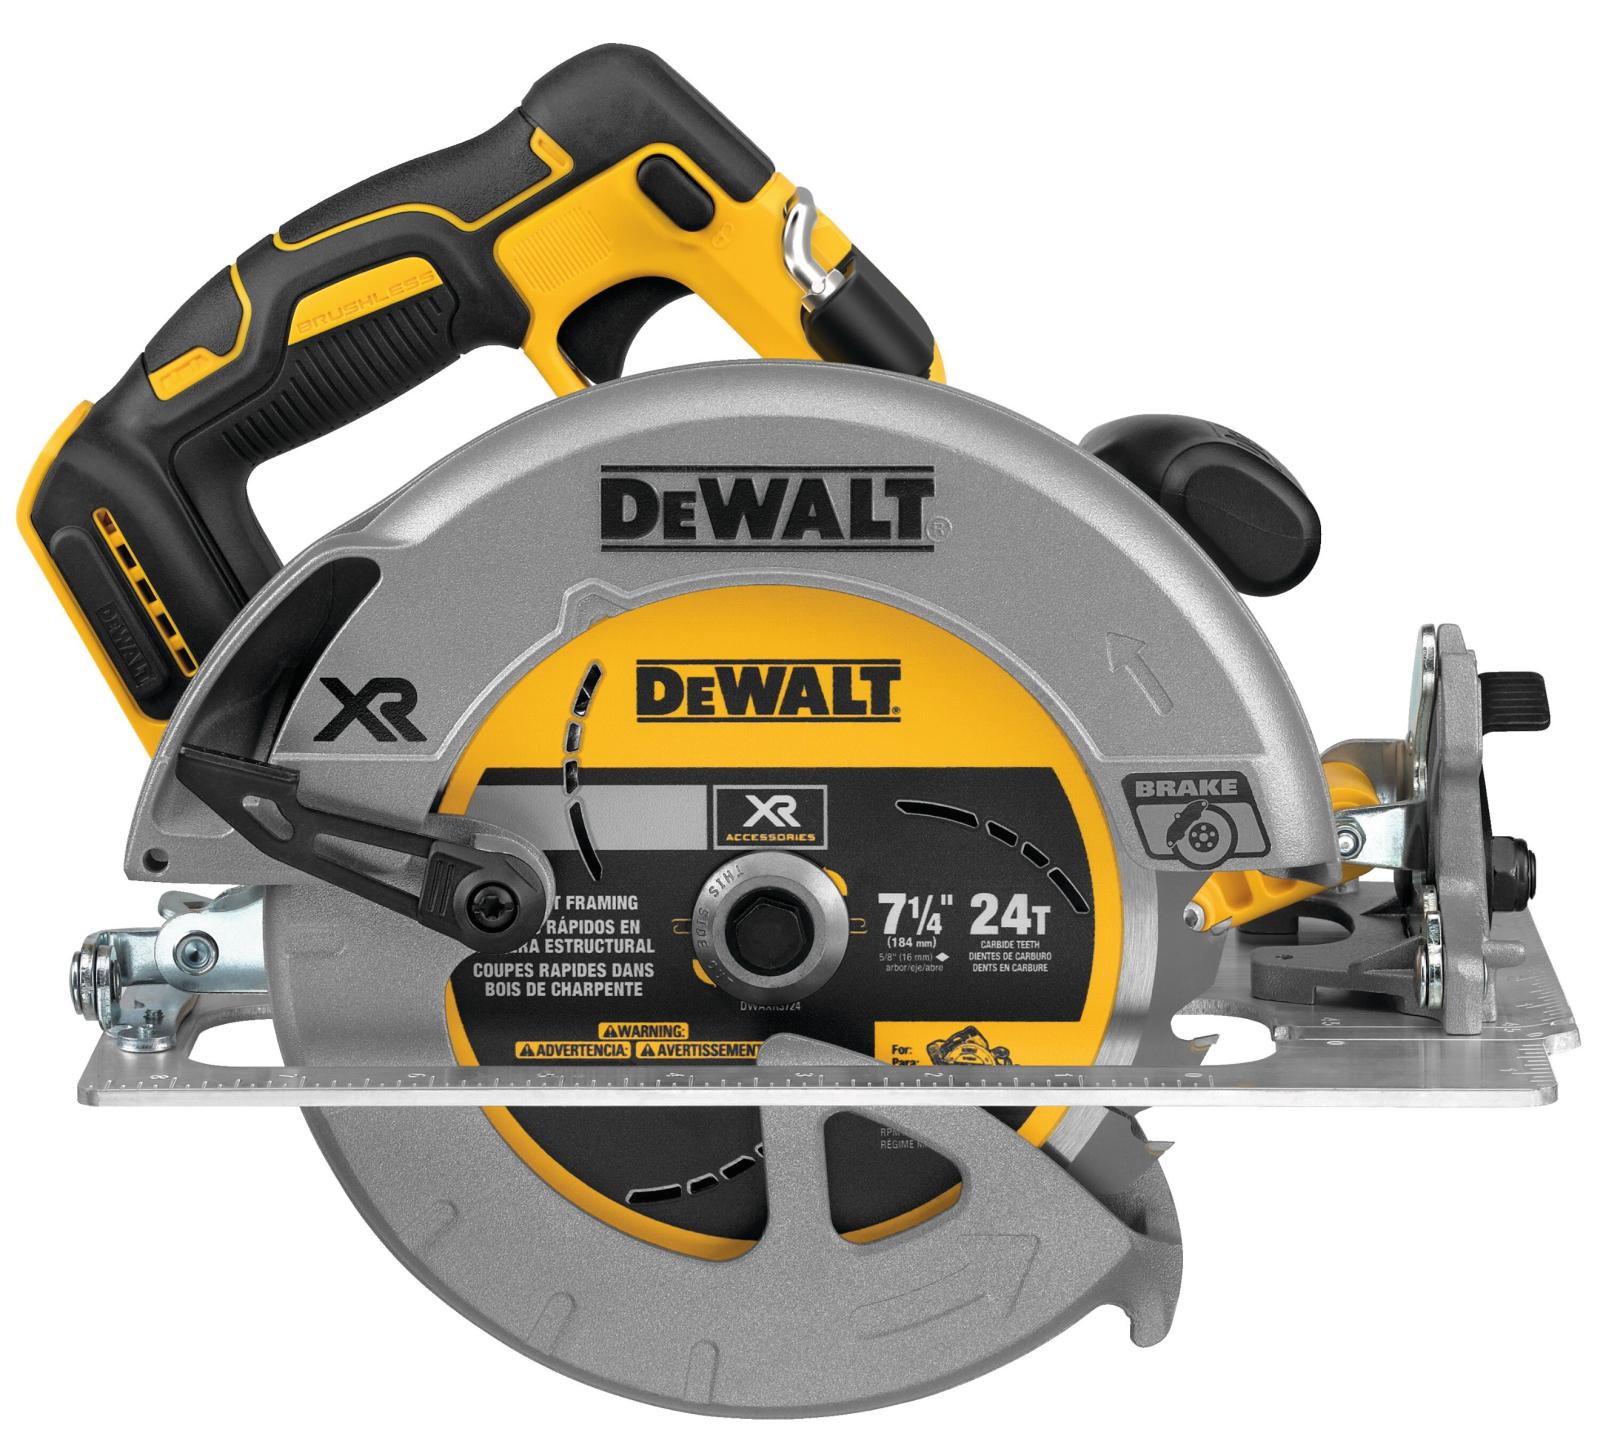 DeWalt 20V MAX 7-1/4" Cordless Circular Saw